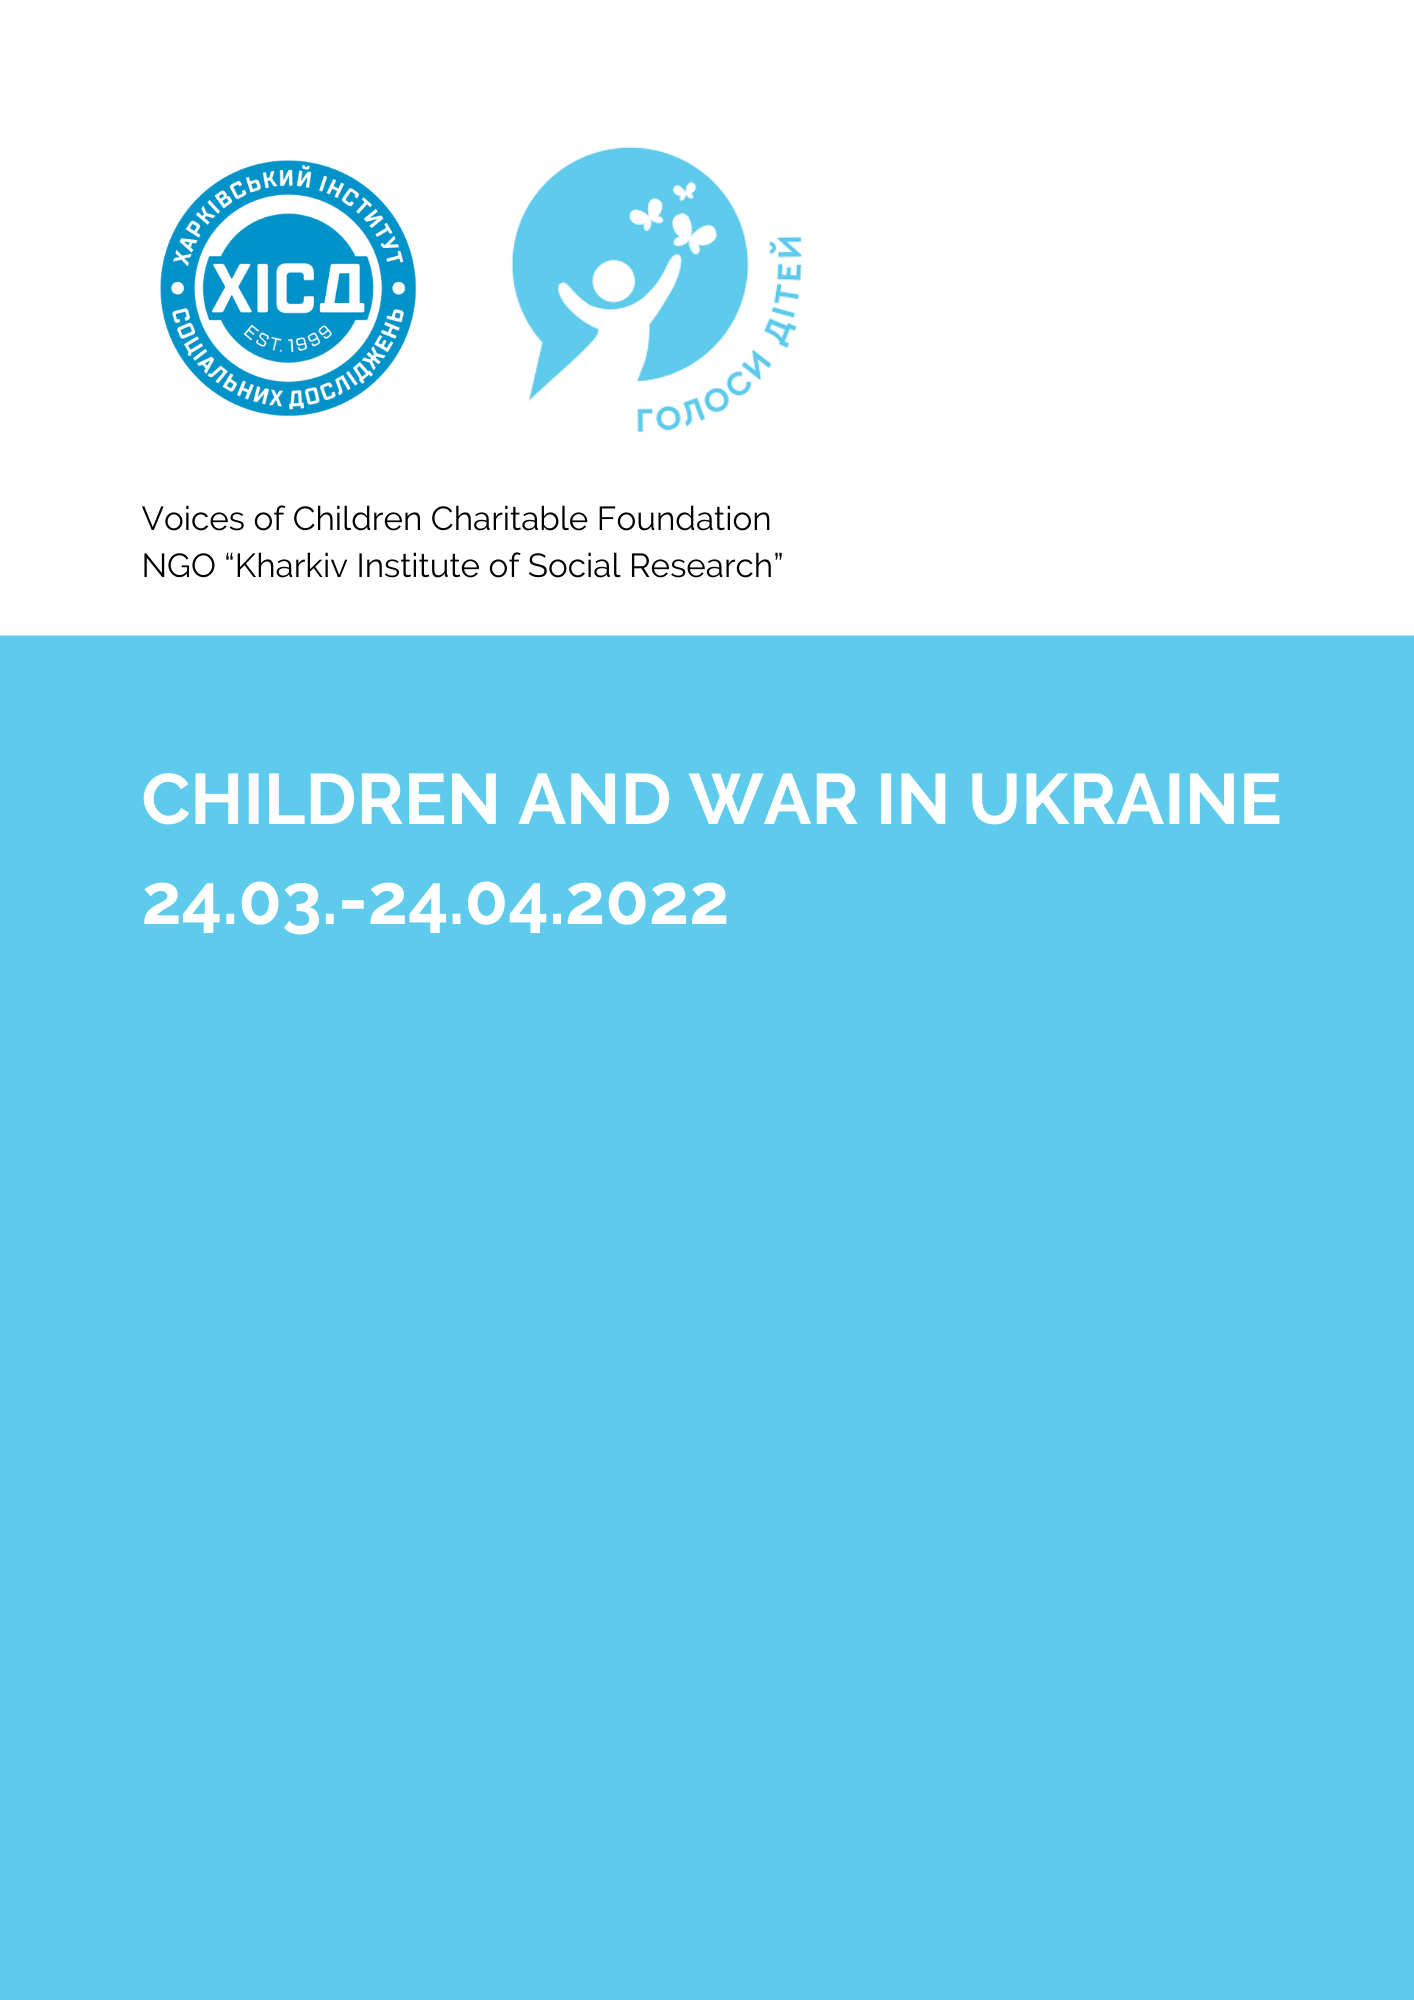 CHILDREN AND WAR IN UKRAINE 24.03.-24.04.2022